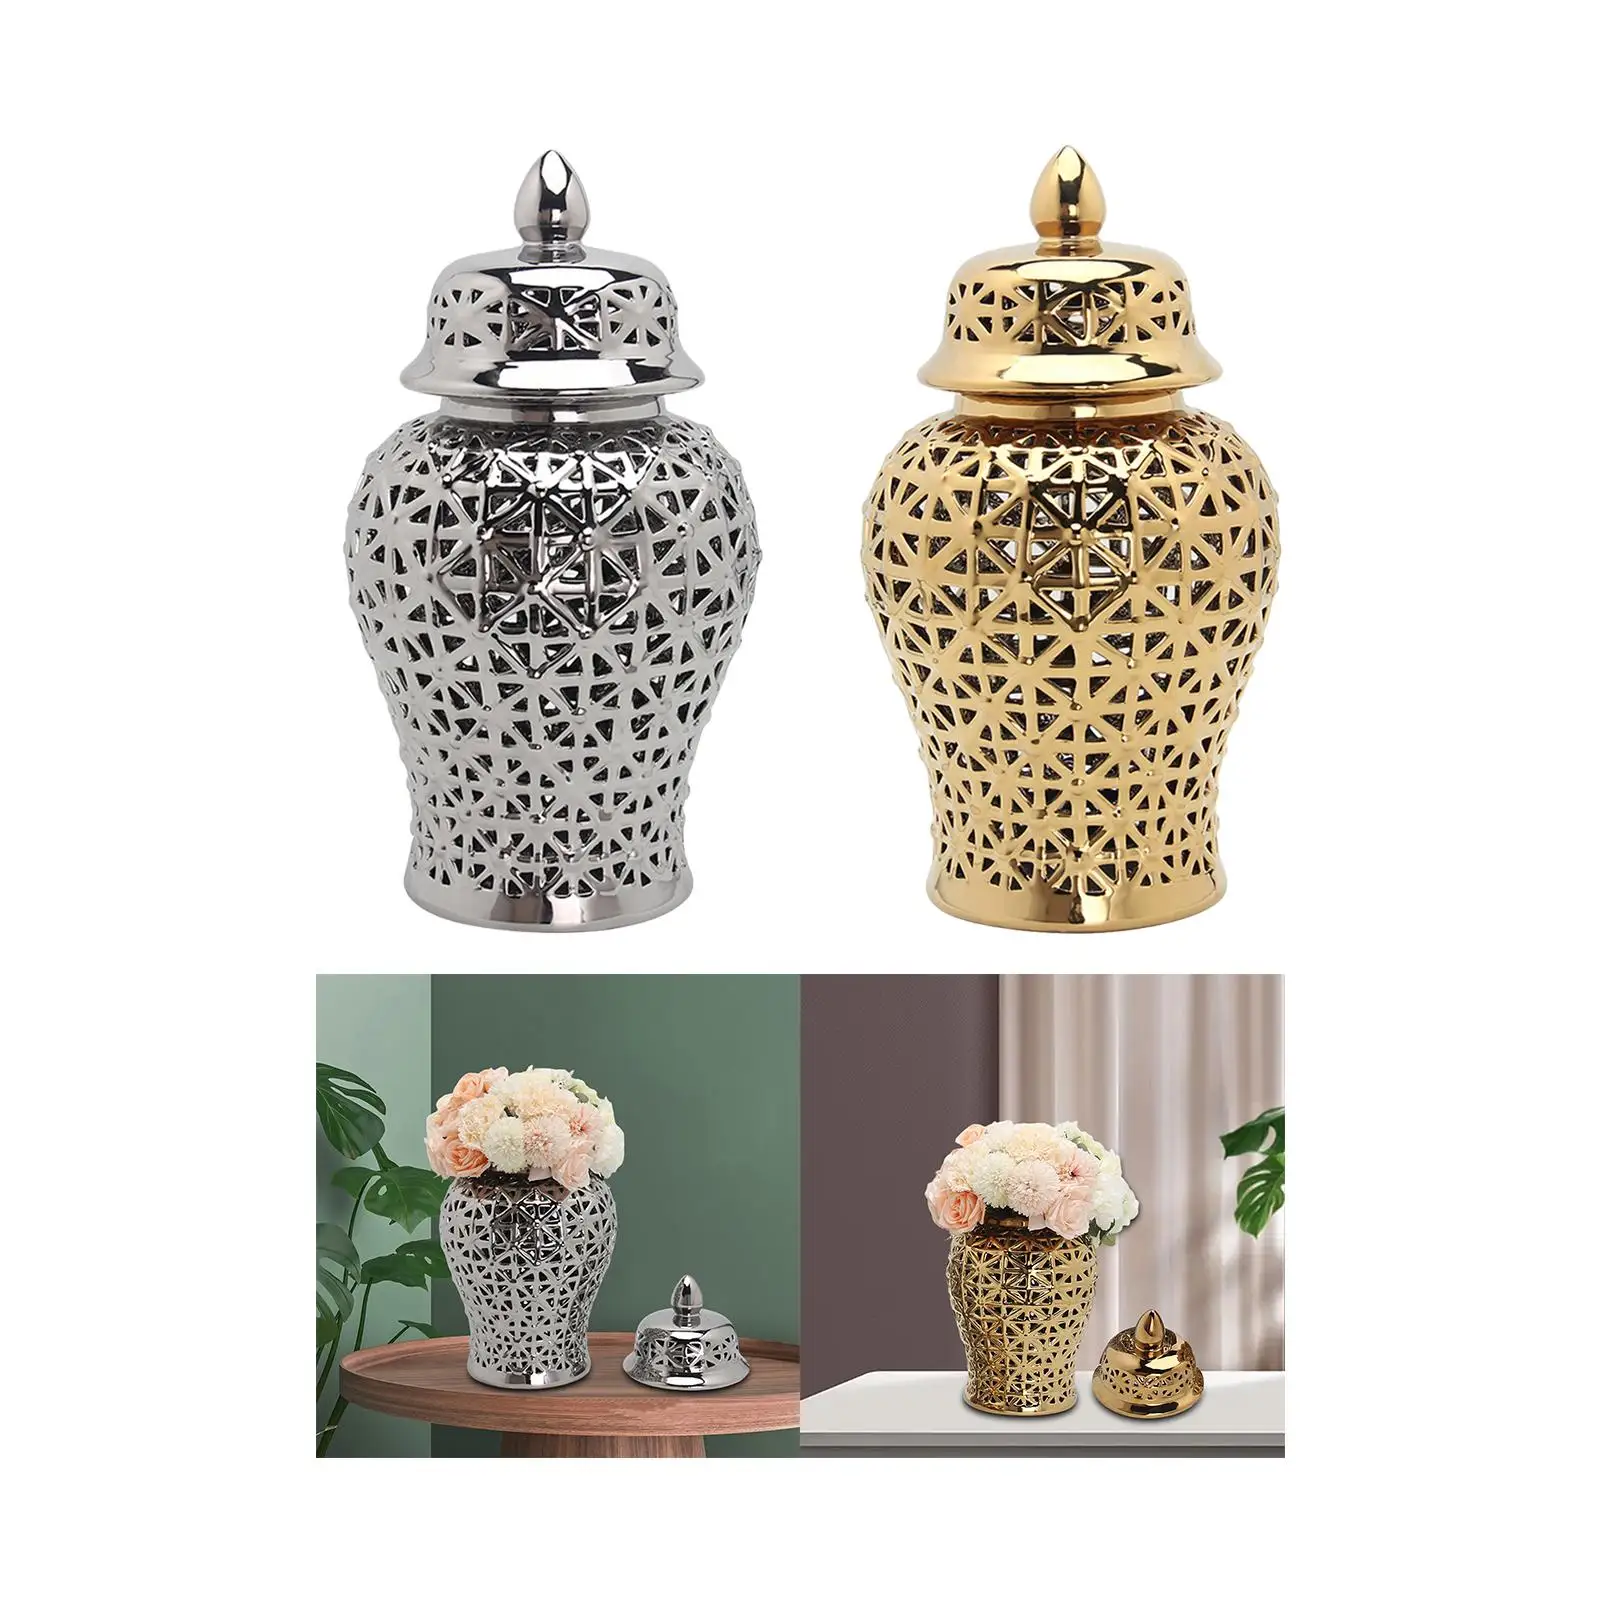 Ceramic Ginger Jar Decorative Porcelain Jar with Lid Handicraft for Bedroom